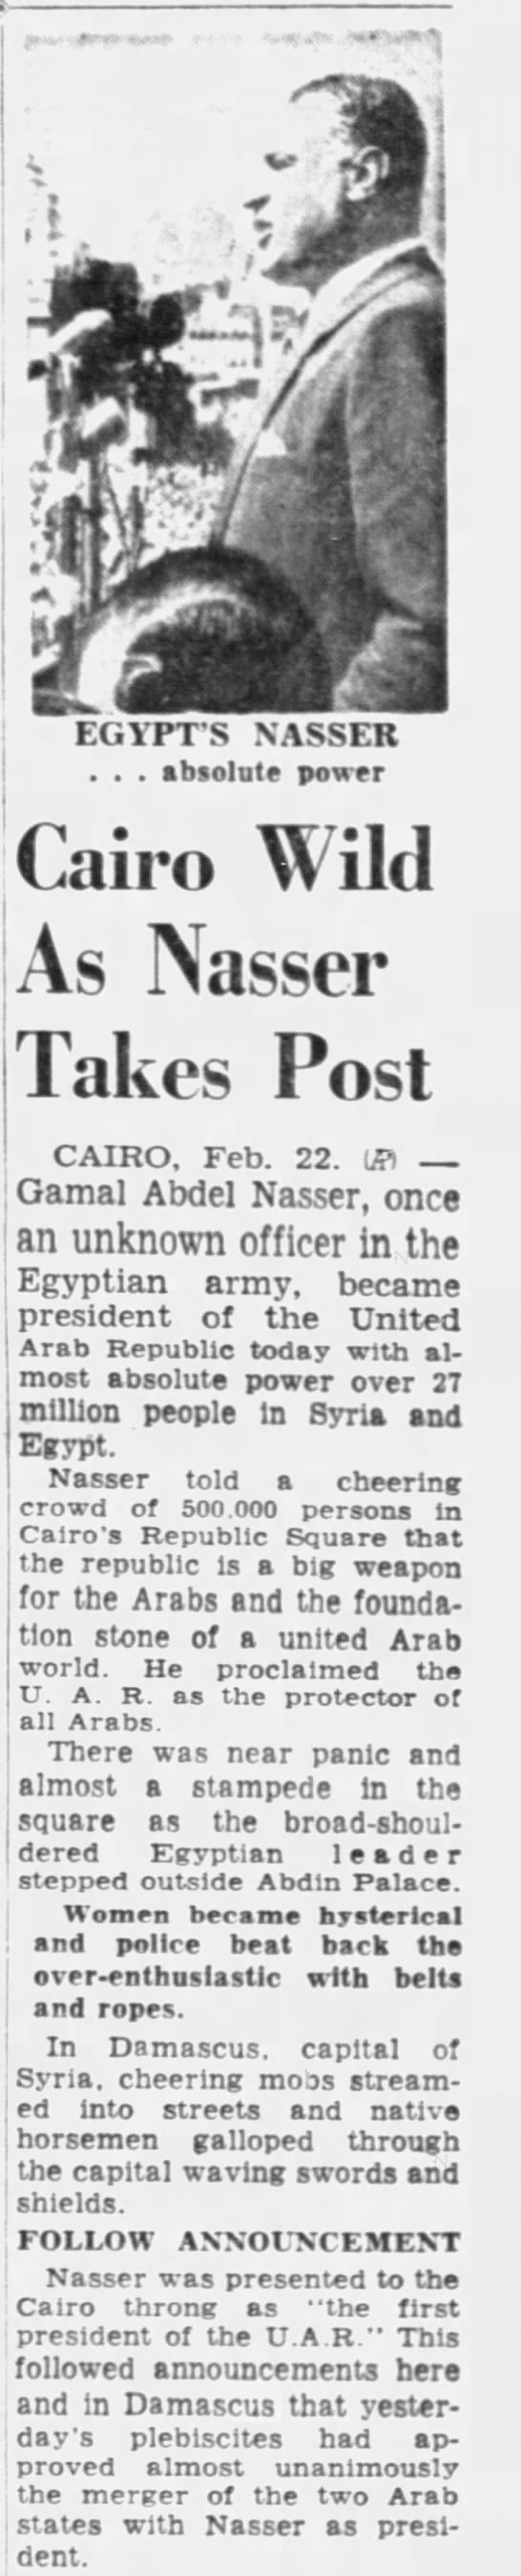 Cairo Wild as Nasser Takes Post - 